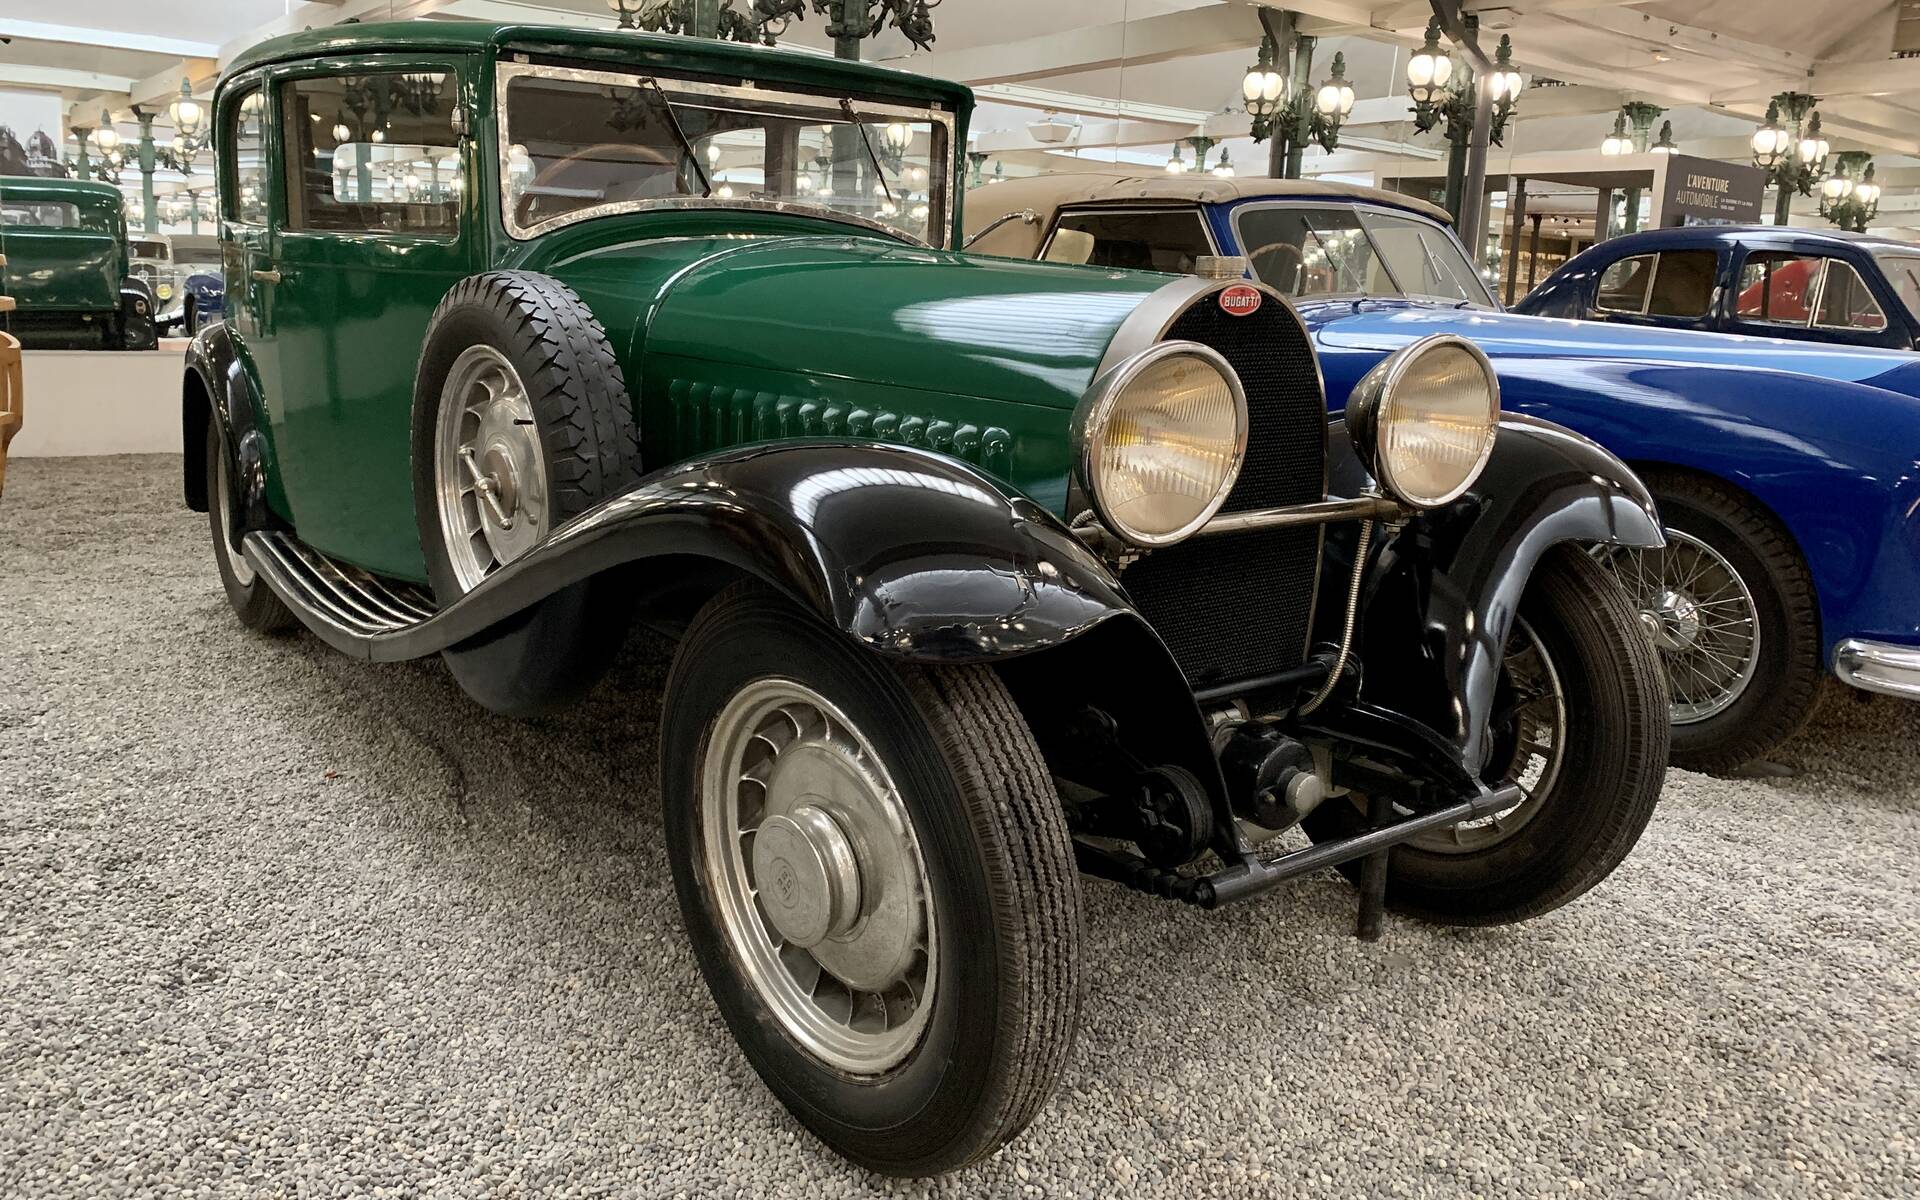 En photos : une centaine de Bugatti réunies dans un même musée 503061-en-photos-des-dizaines-de-bugatti-reunies-dans-un-meme-musee